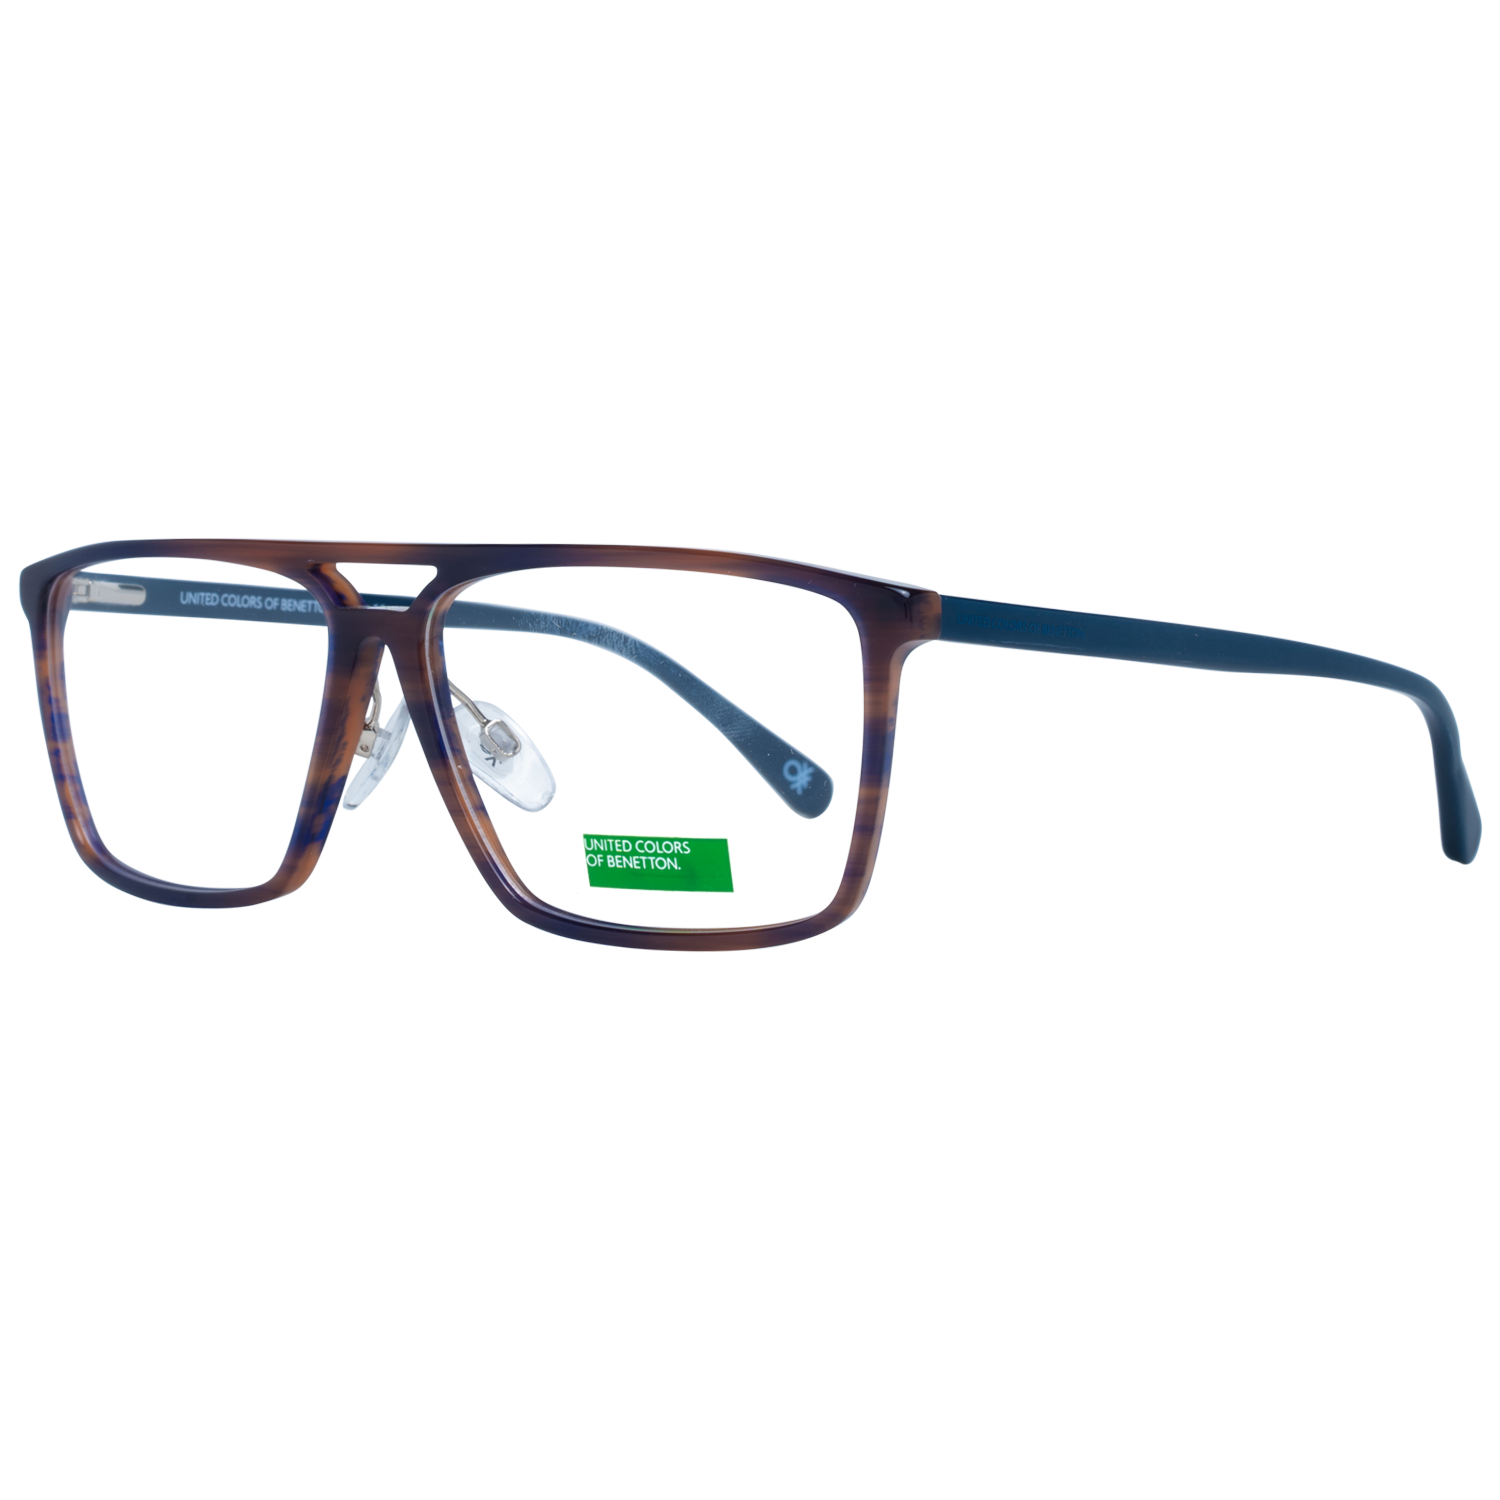 Benetton Frames Benetton Glasses Frames BEO1000 652 58 Eyeglasses Eyewear UK USA Australia 